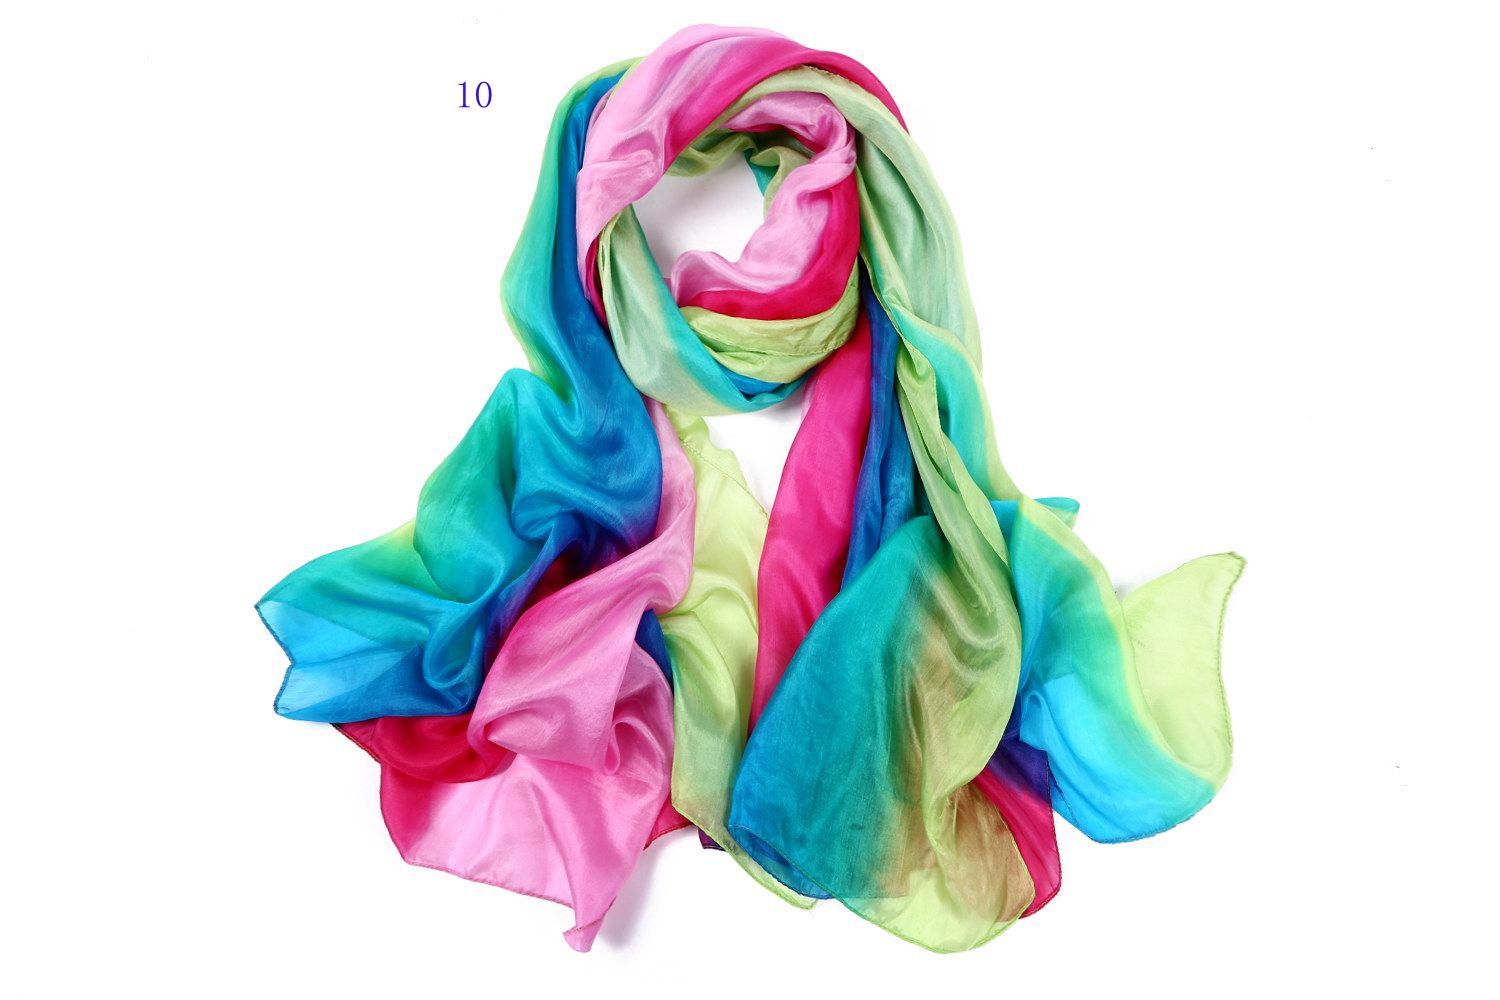 Alle gematchte vrouwen schaduwrijke 100% zijde satijn sarongs hijabs bandanas sjaal wrap sjaal poncho grote 180 * 110 cm gemengde kleur 9 stks / partij # 3350